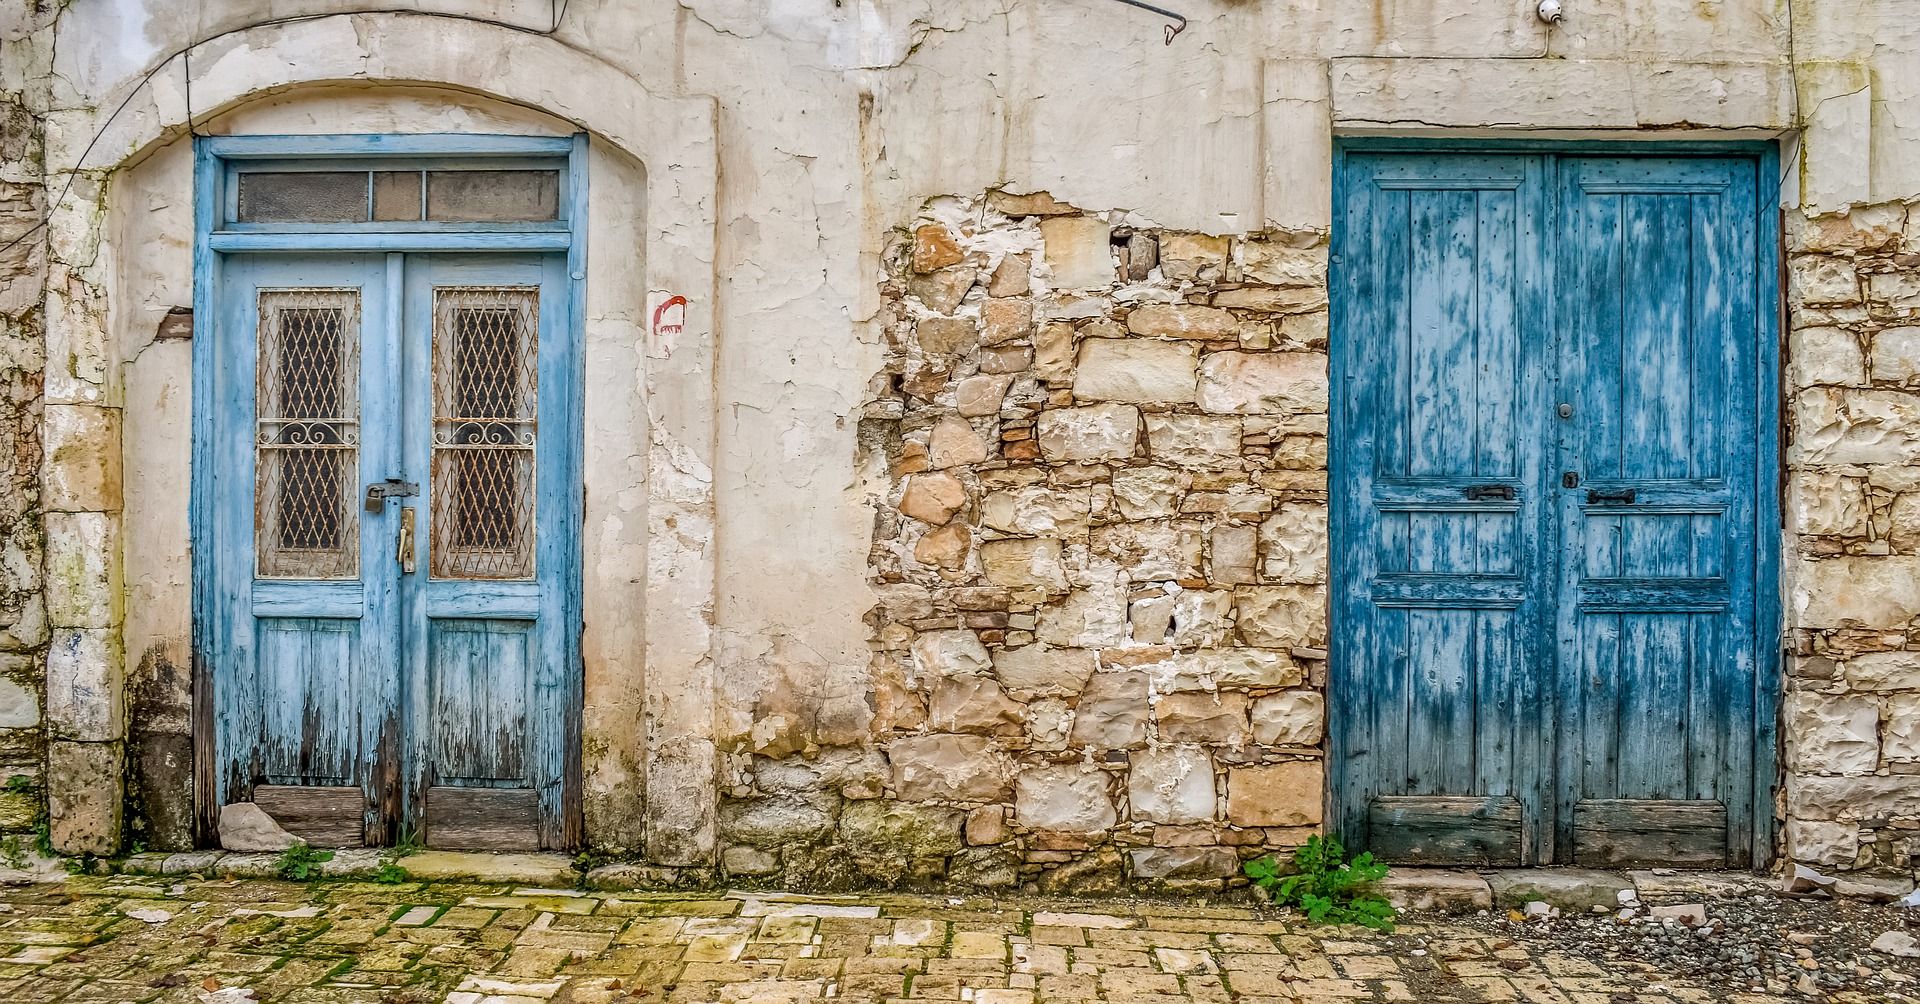 Dos puertas típicas de la arquitectura popular portuguesa.